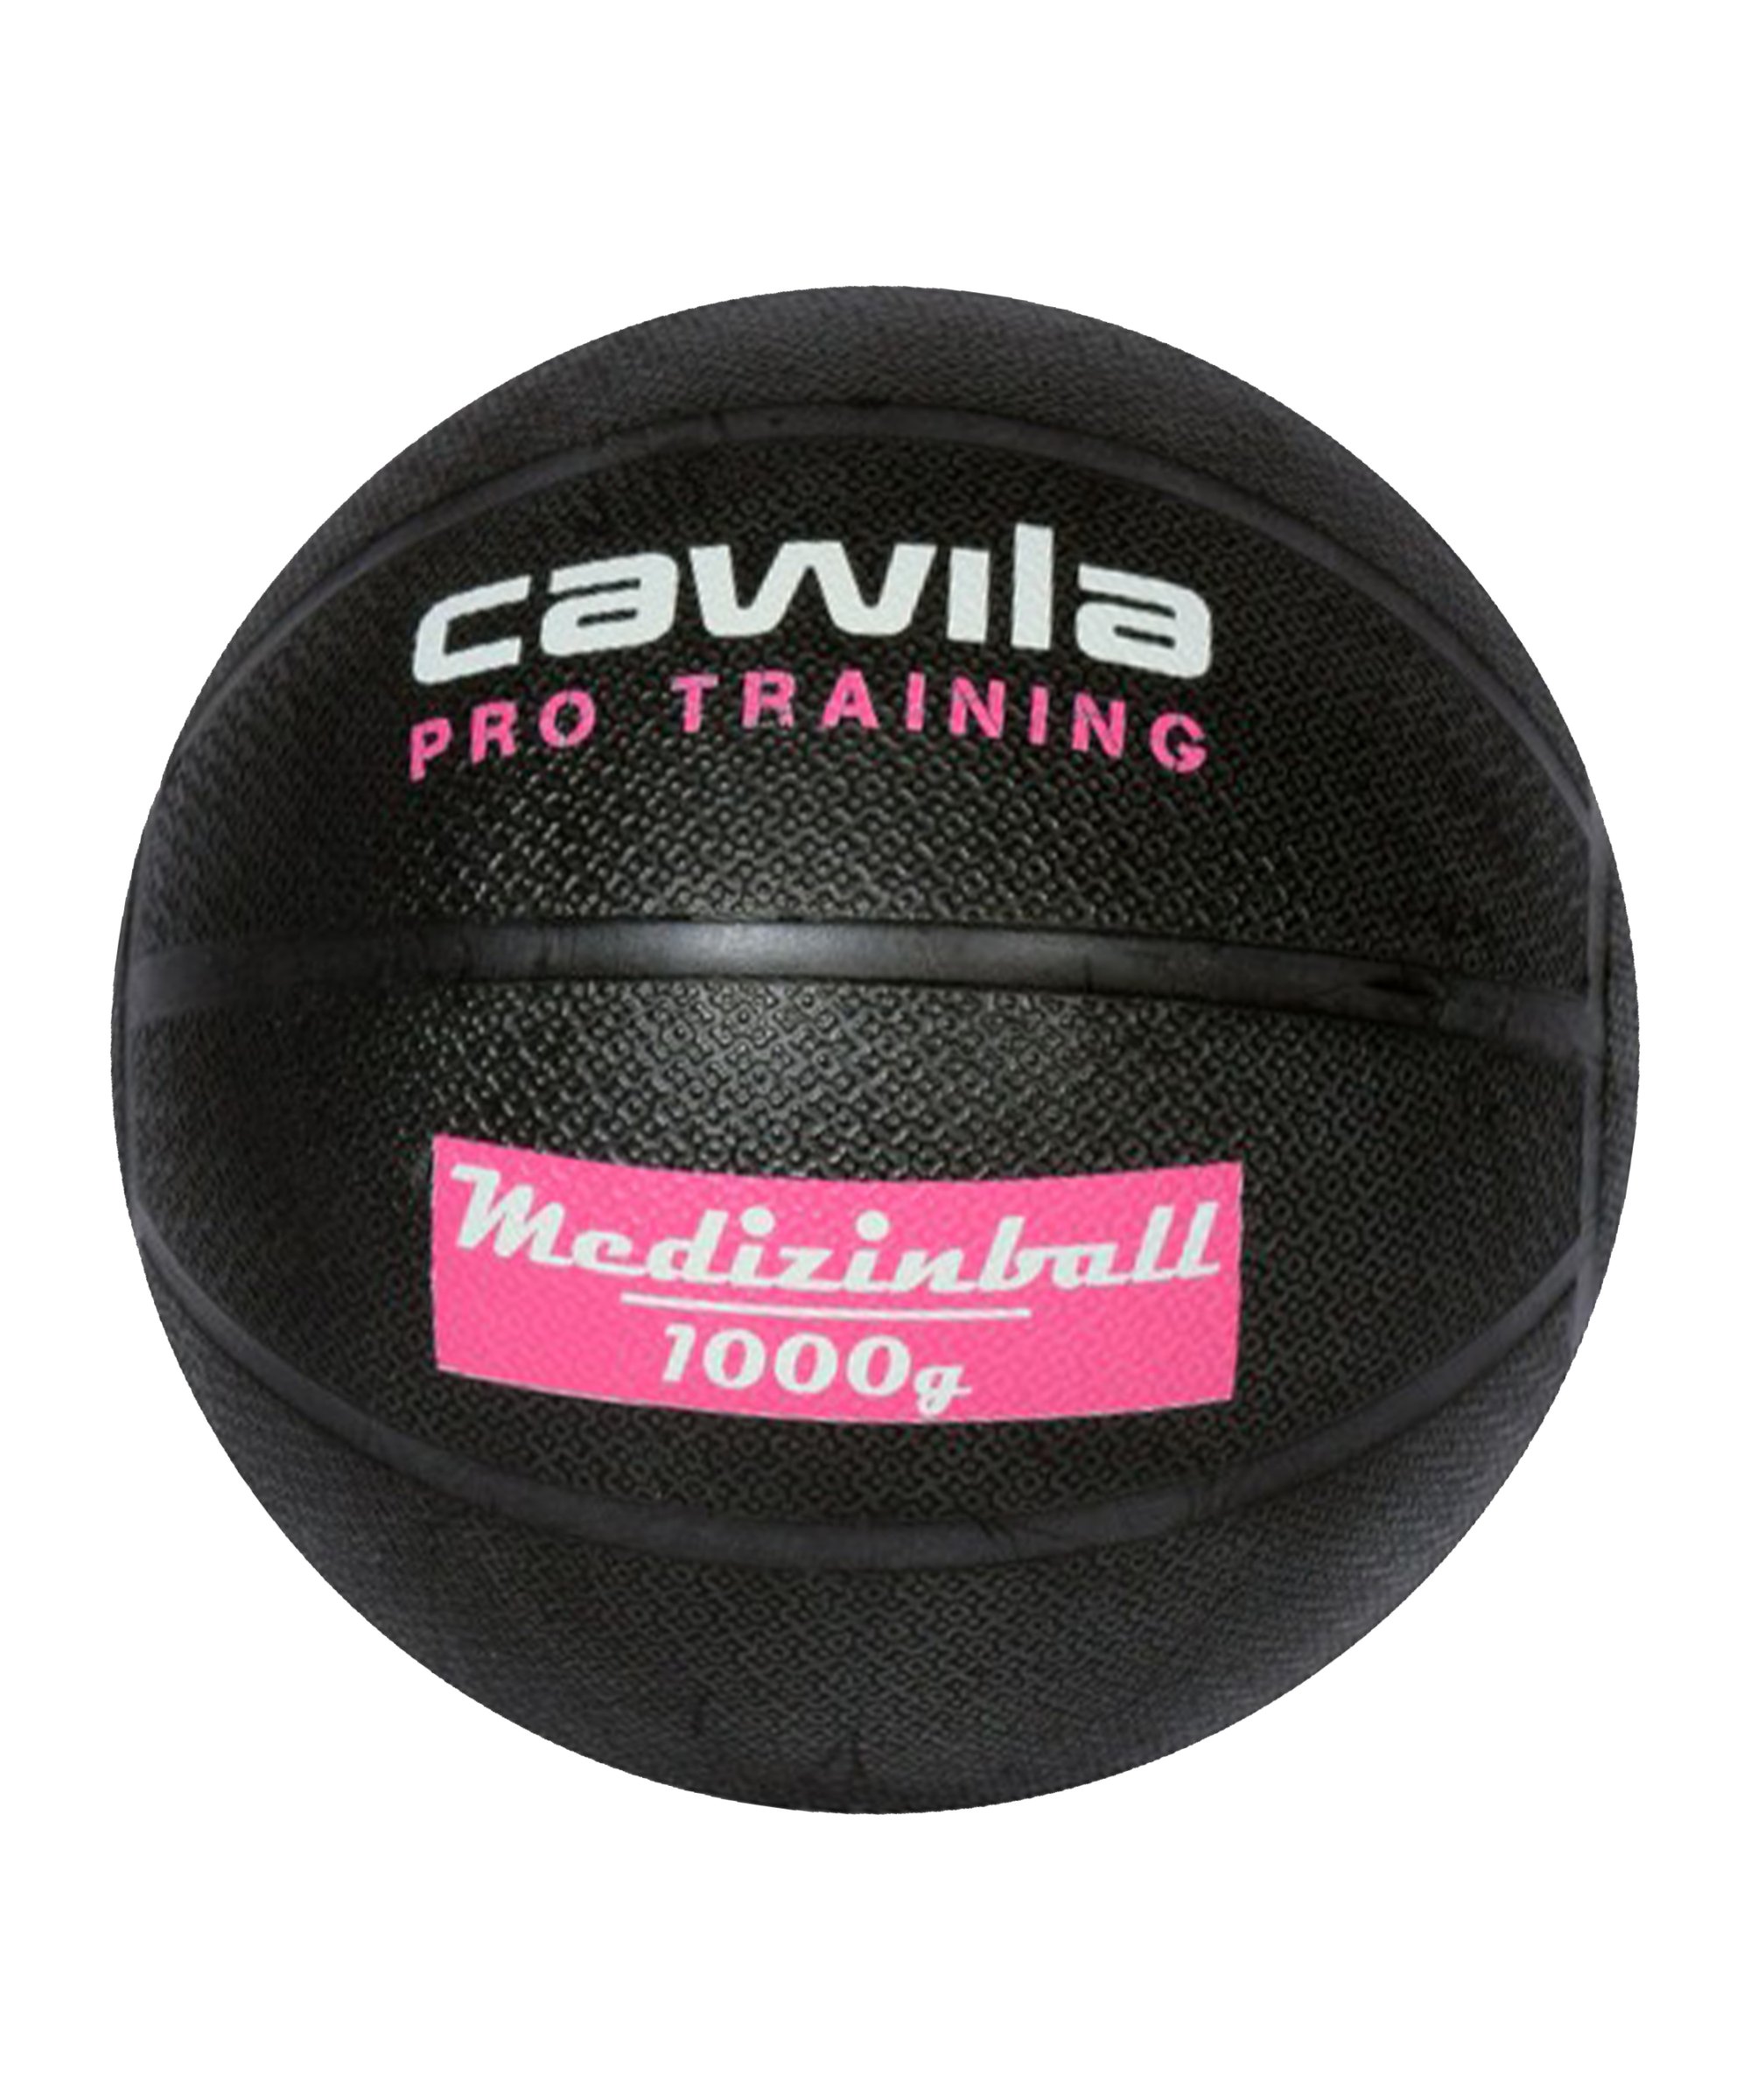 Cawila Medizinball PRO Training 1,0 Kg Schwarz - schwarz